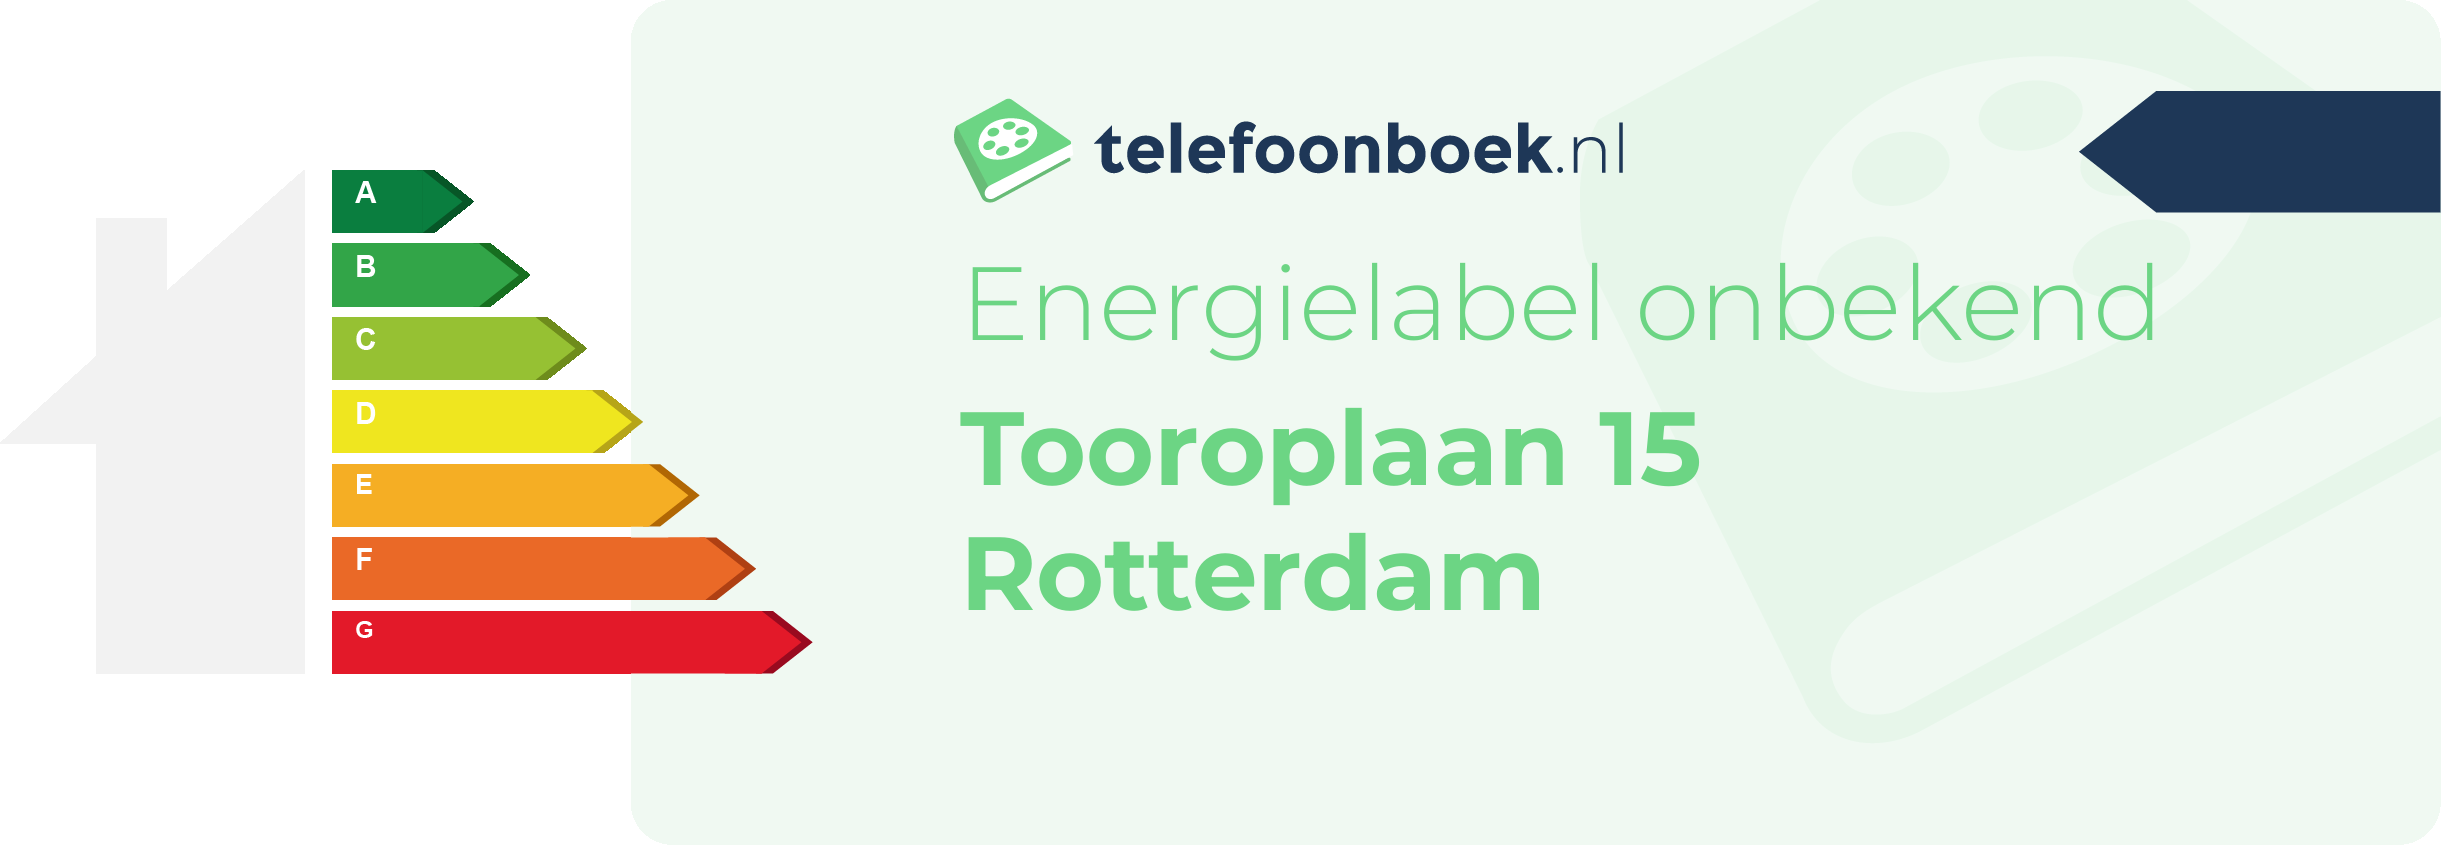 Energielabel Tooroplaan 15 Rotterdam